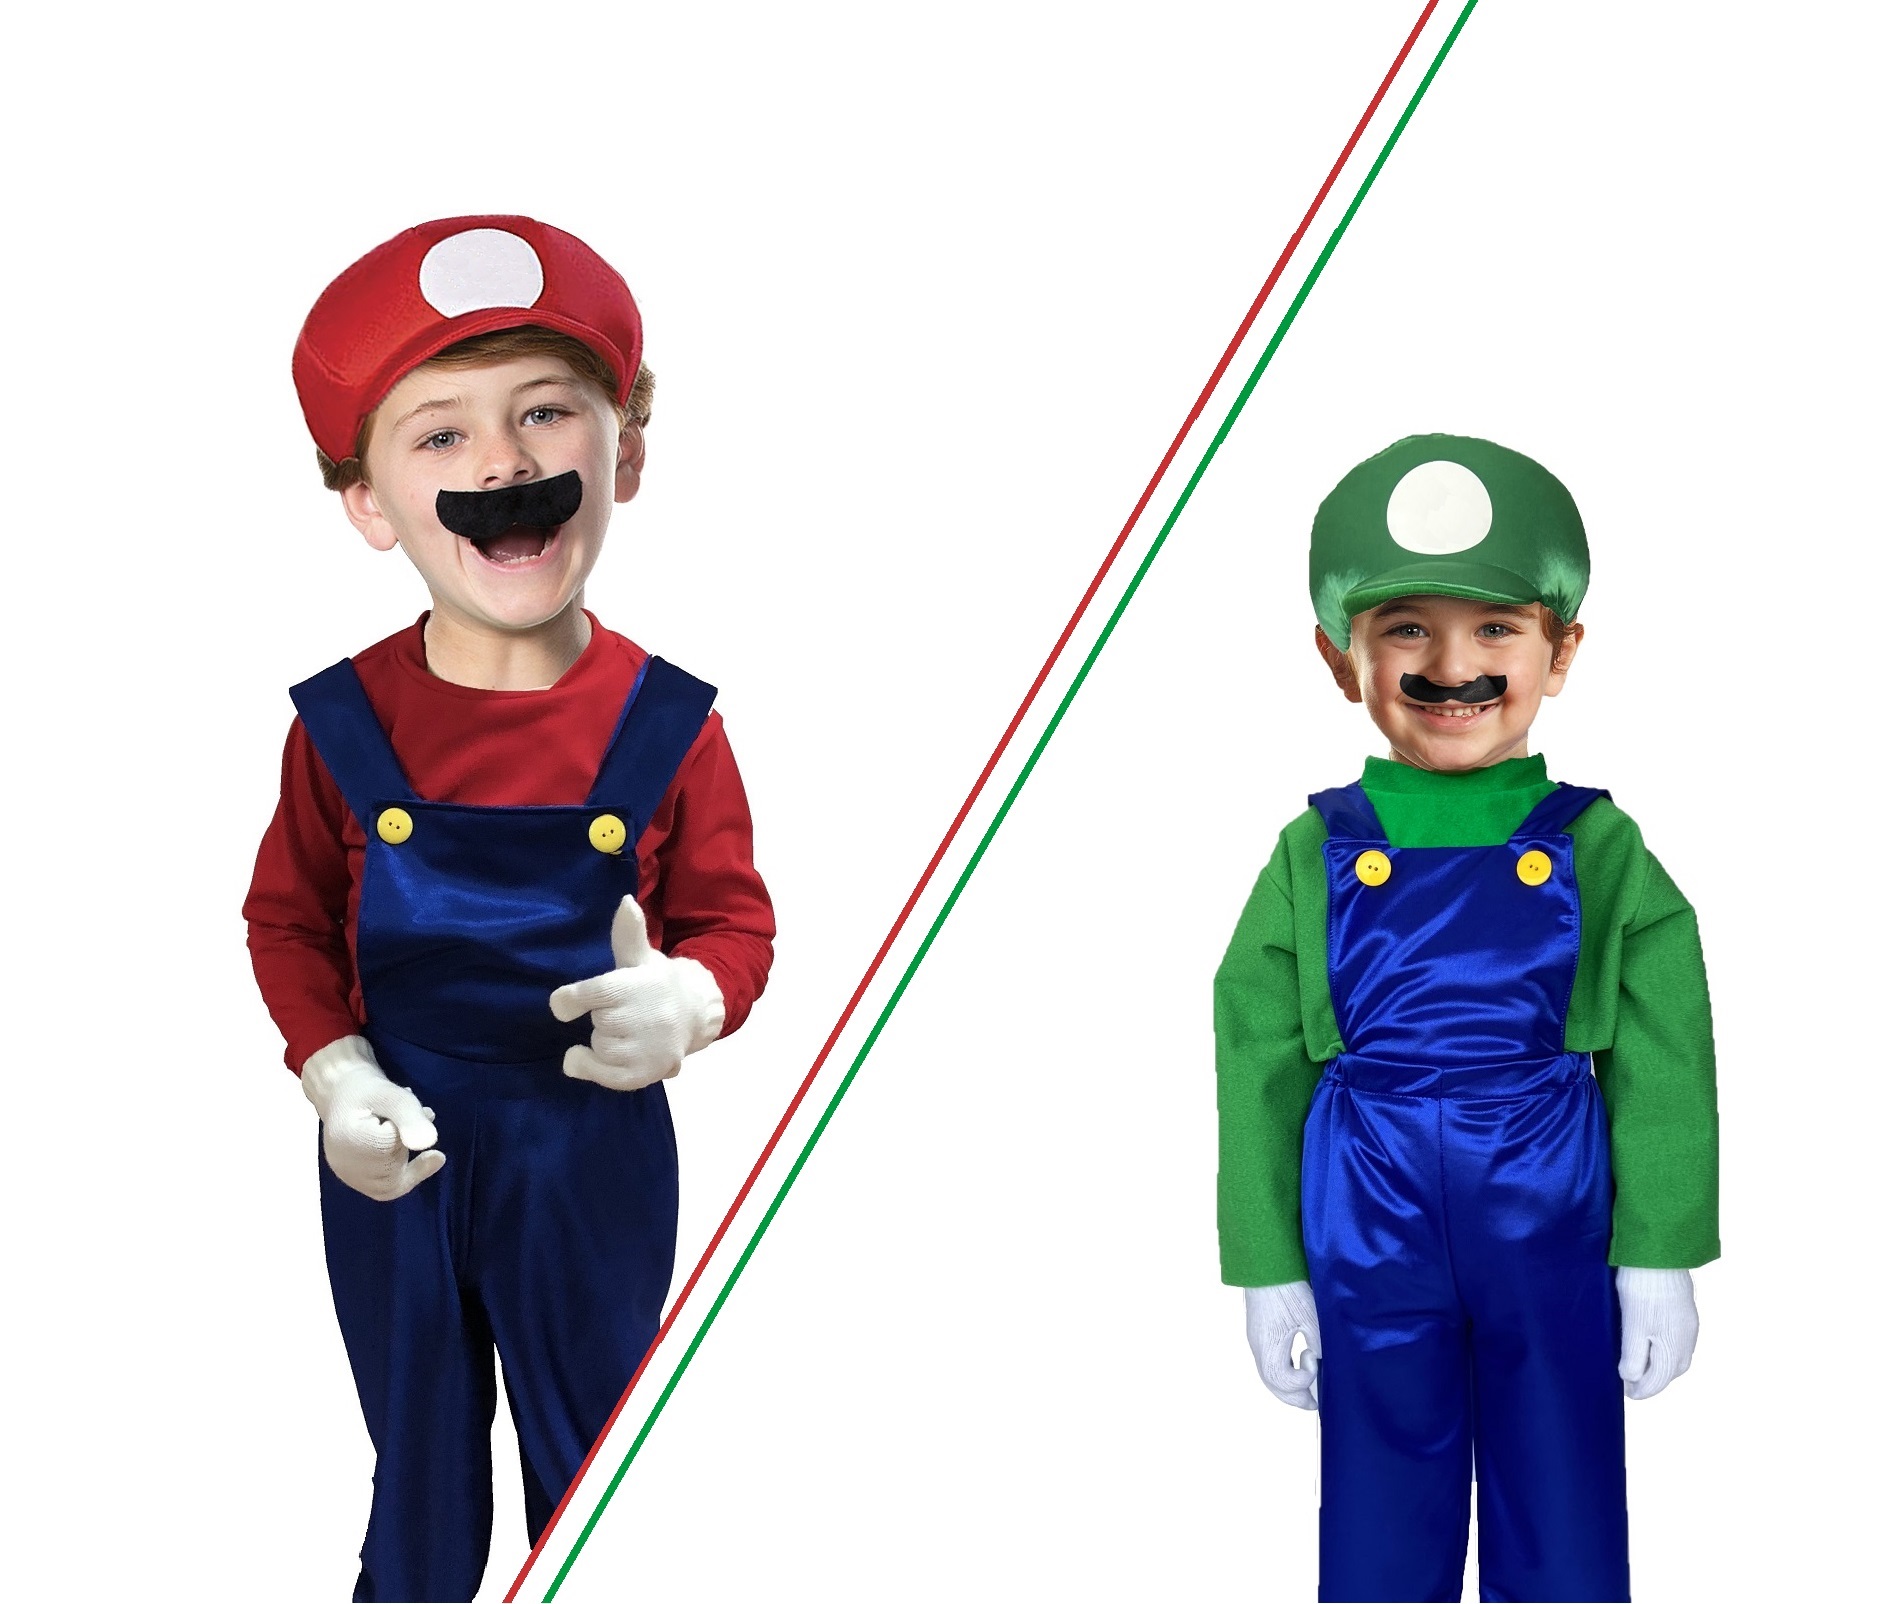 Disfraz Mario Bros Bebé Nintendo Disfraces Bebes Videojuegos